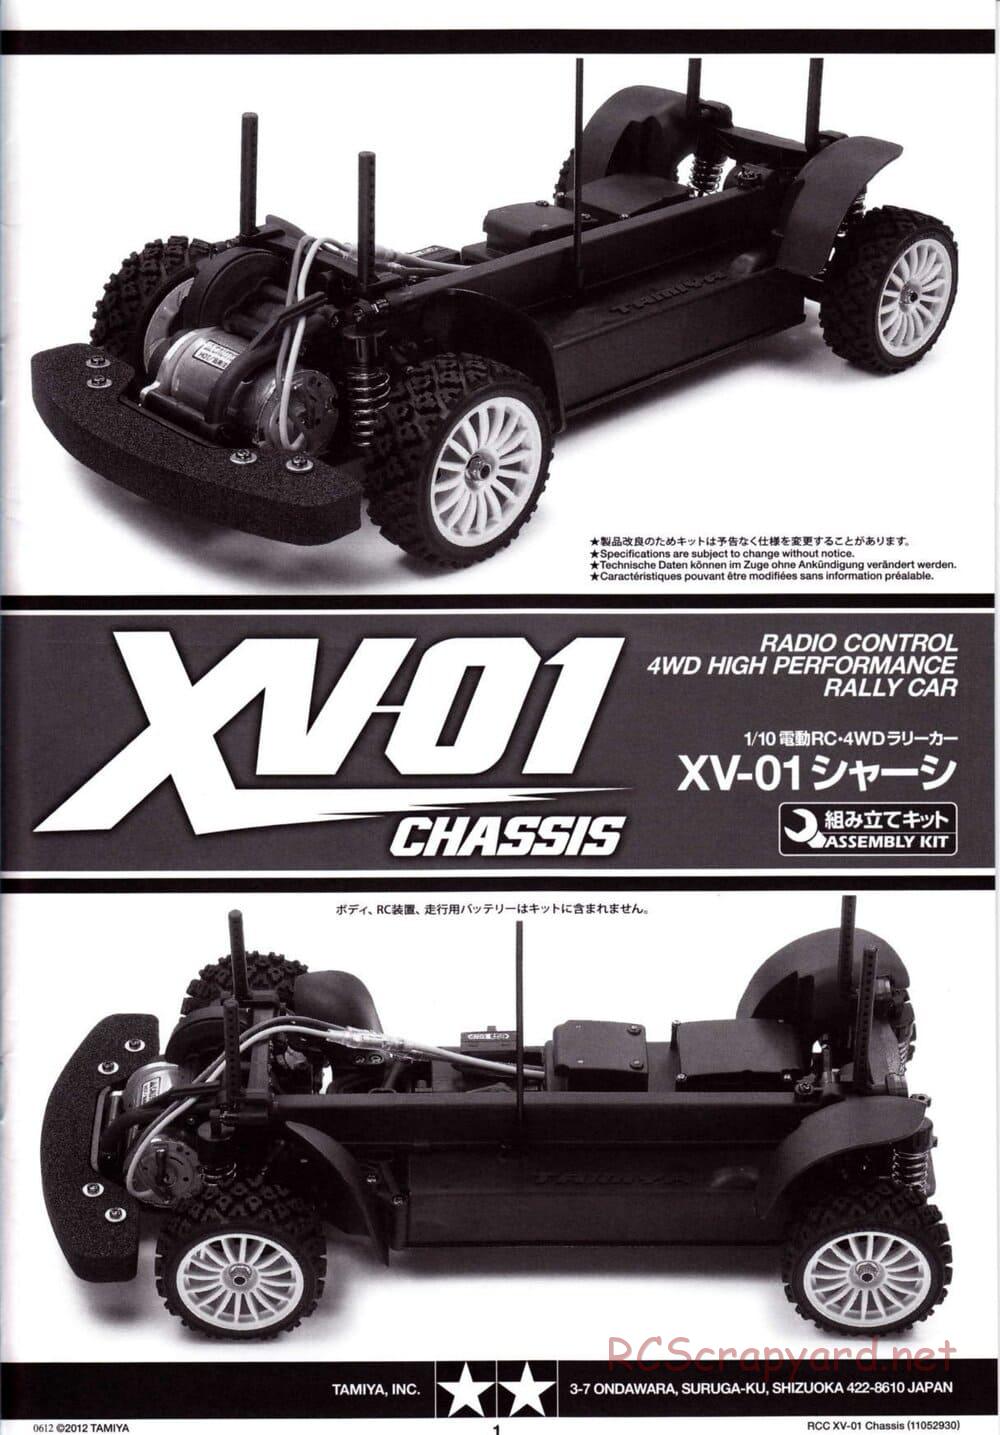 Tamiya - XV-01 Chassis - Manual - Page 1